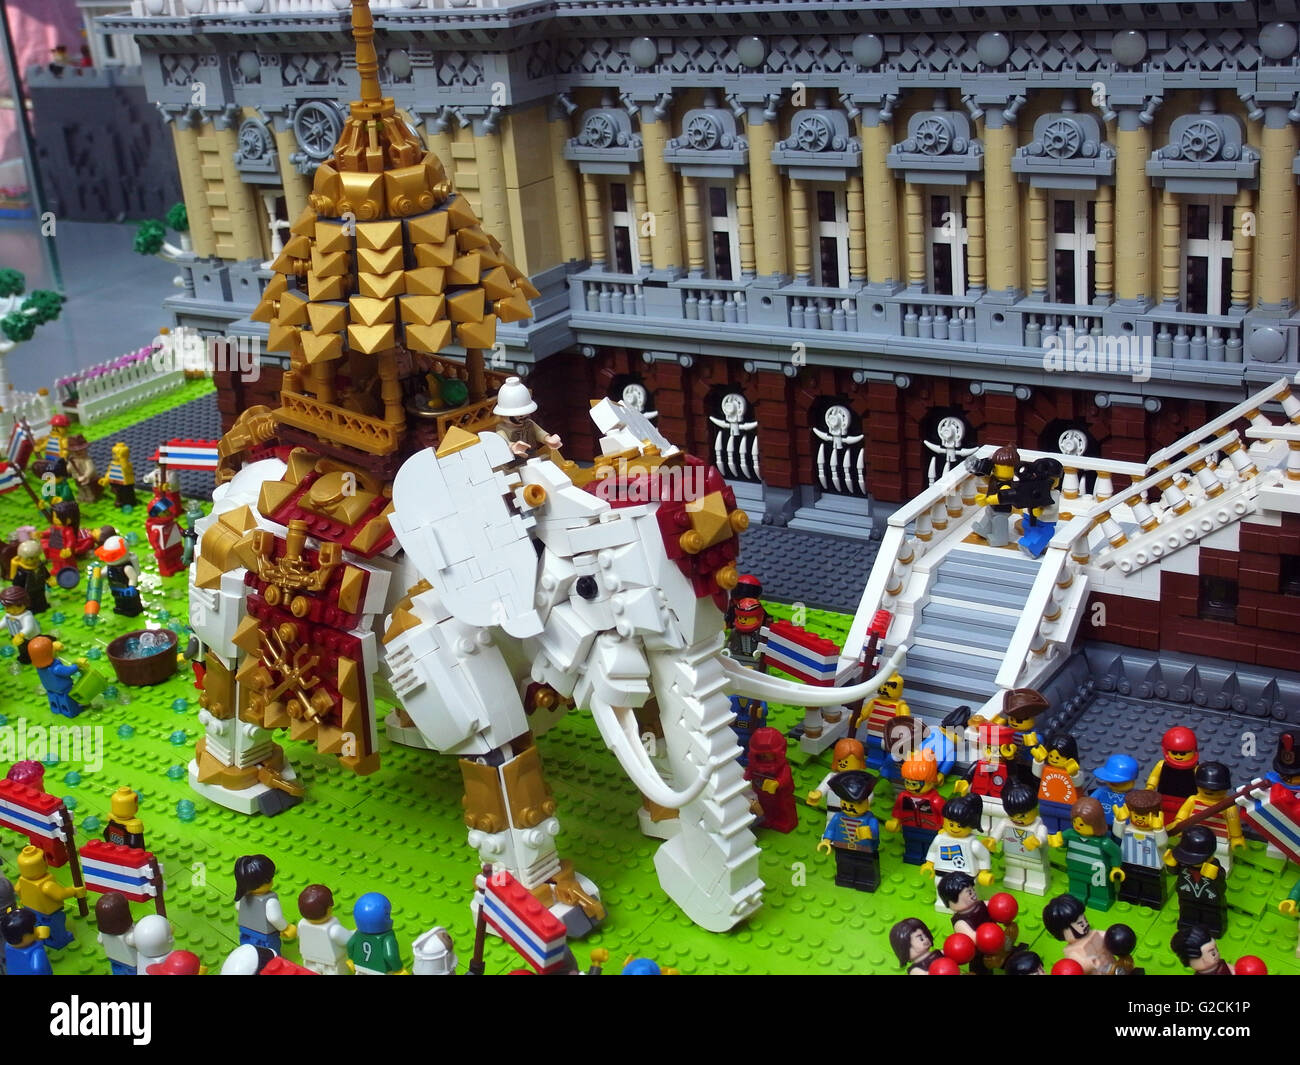 Modello di Lego Thailandia paesaggio tempio edificio tradizionale antica Santa Casa Imperial palace toy divertimento diurno white elephant persone c Foto Stock